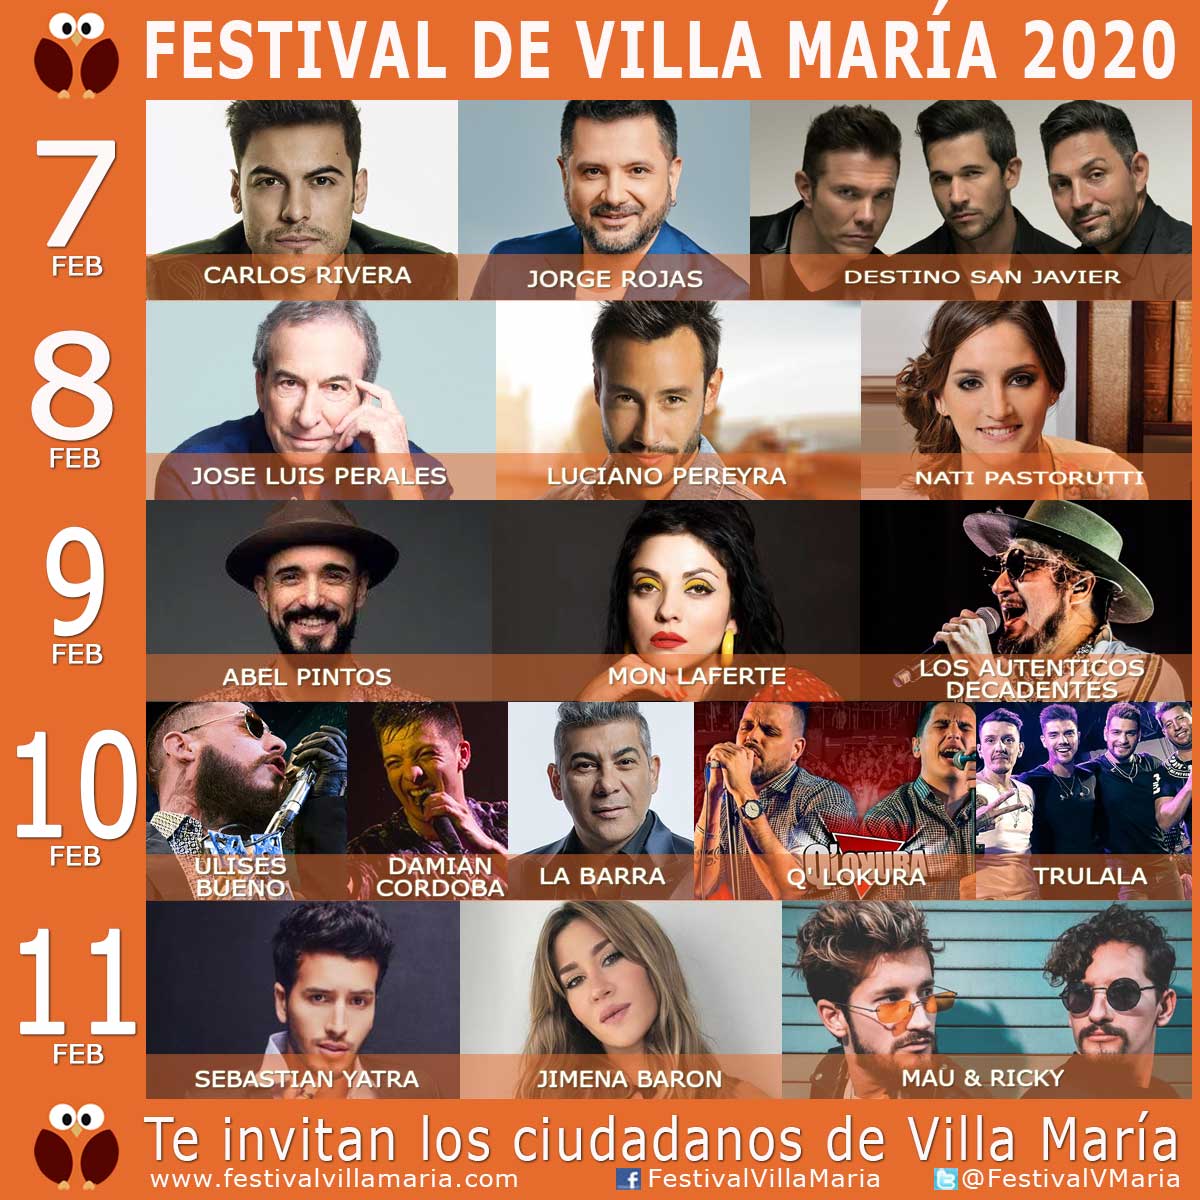 Abel Pintos y Sebastián Yatra confirmados para Villa María 2020 • Canal C